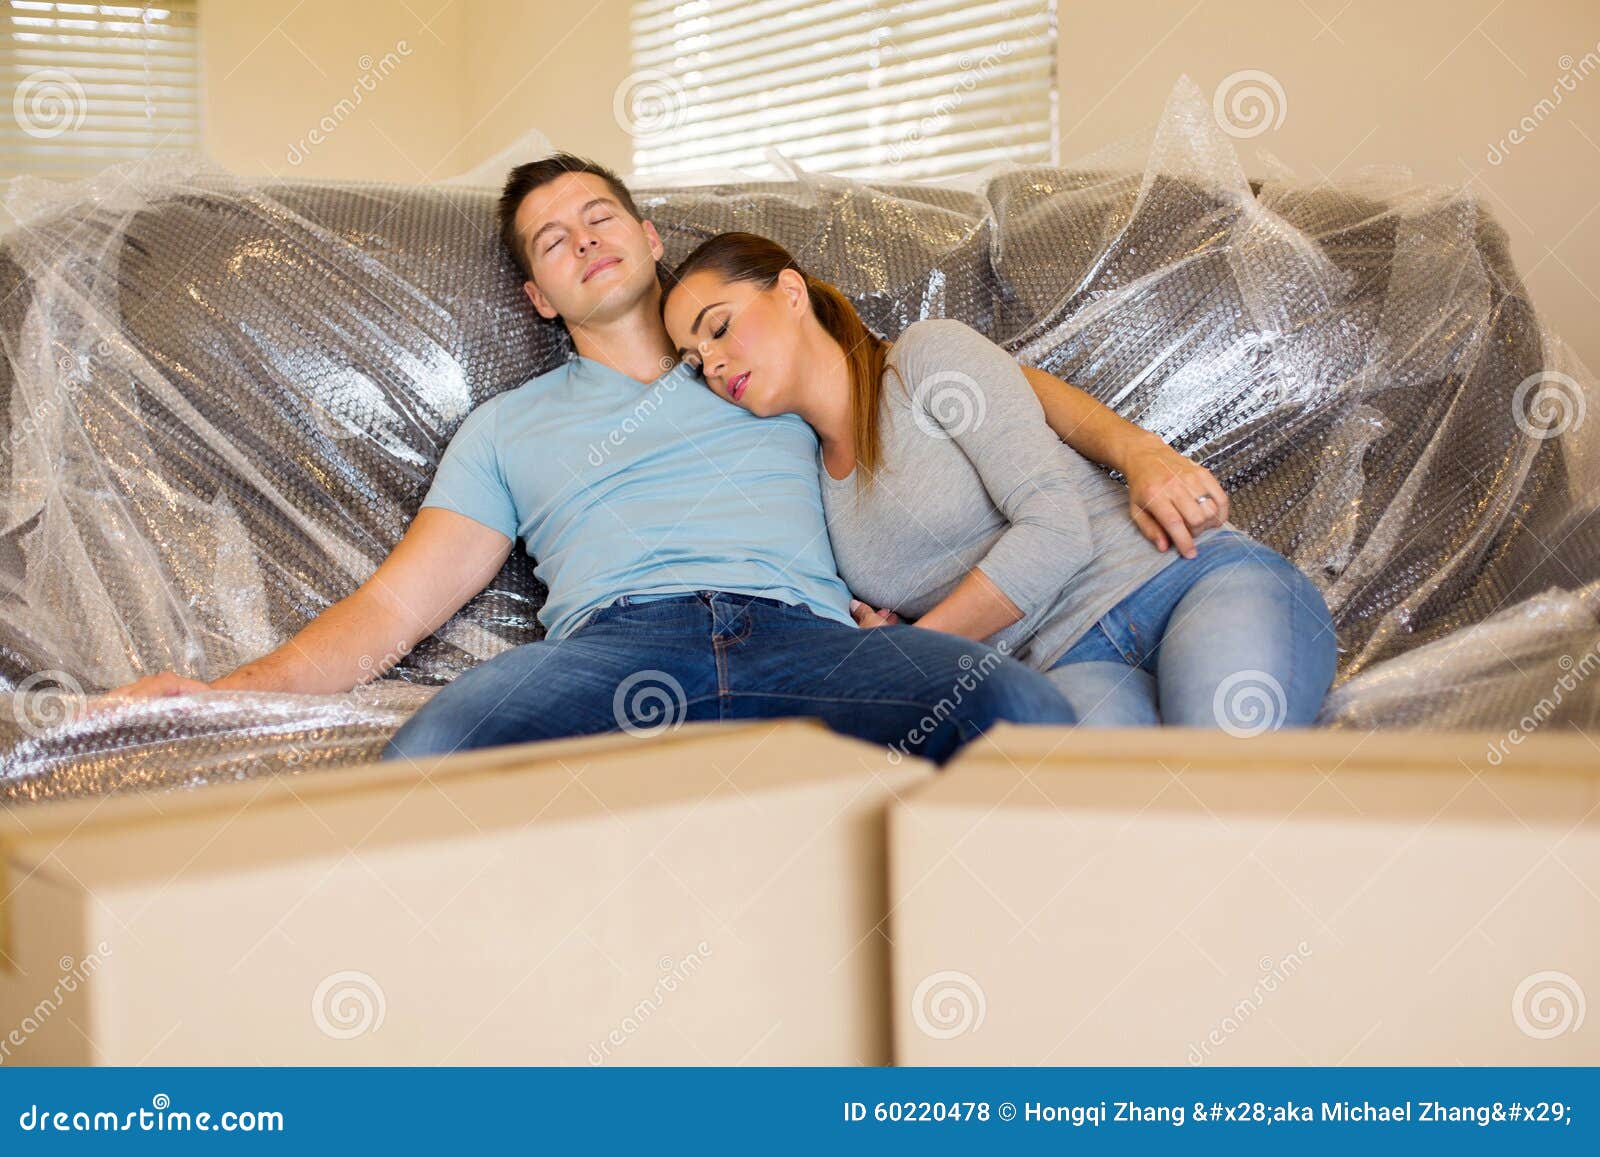 Русский муж жена на диван. Облокотился на диван. Мужчина облокотился на диван. Уставшая пара отдыхает на диване. Девушка облокотилась на диван.